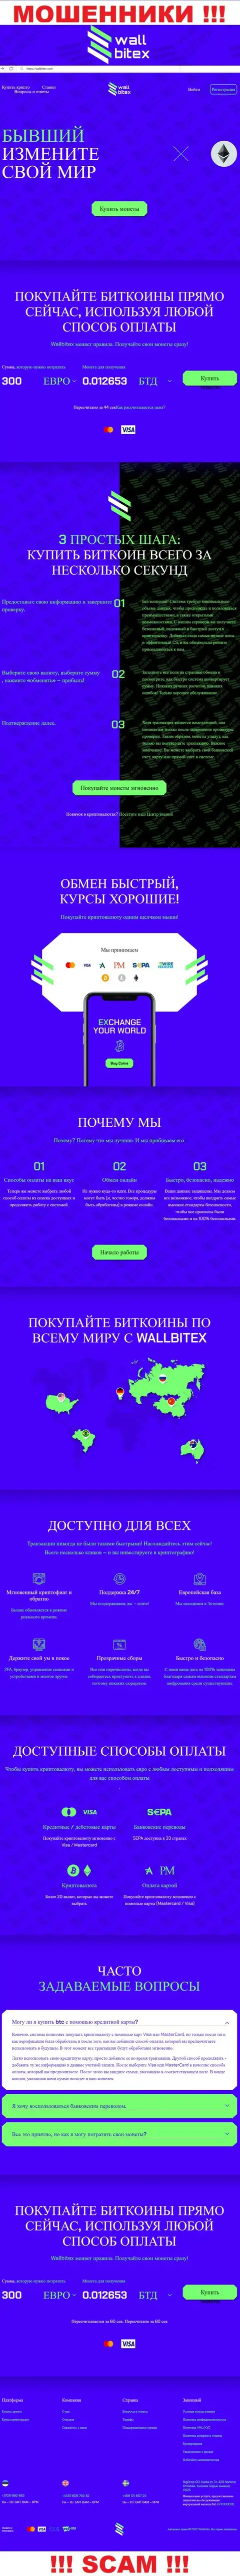 WallBitex Com - это официальный сайт преступно действующей конторы WallBitex